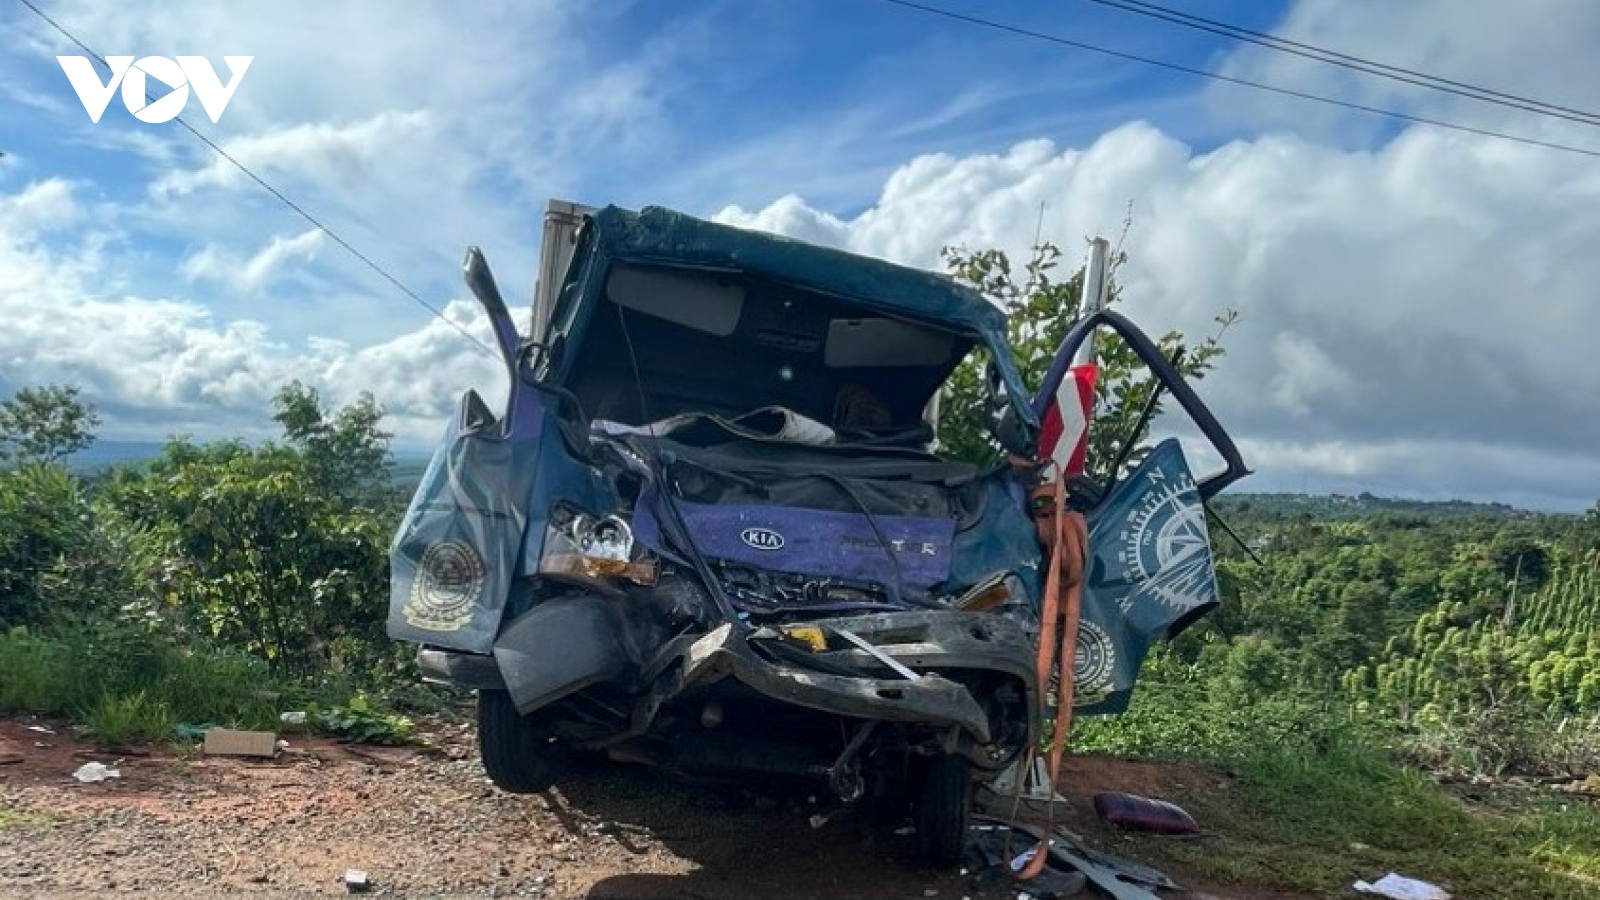 Va chạm giữa xe khách và xe tải, tài xế bị trọng thương mắc kẹt trong cabin